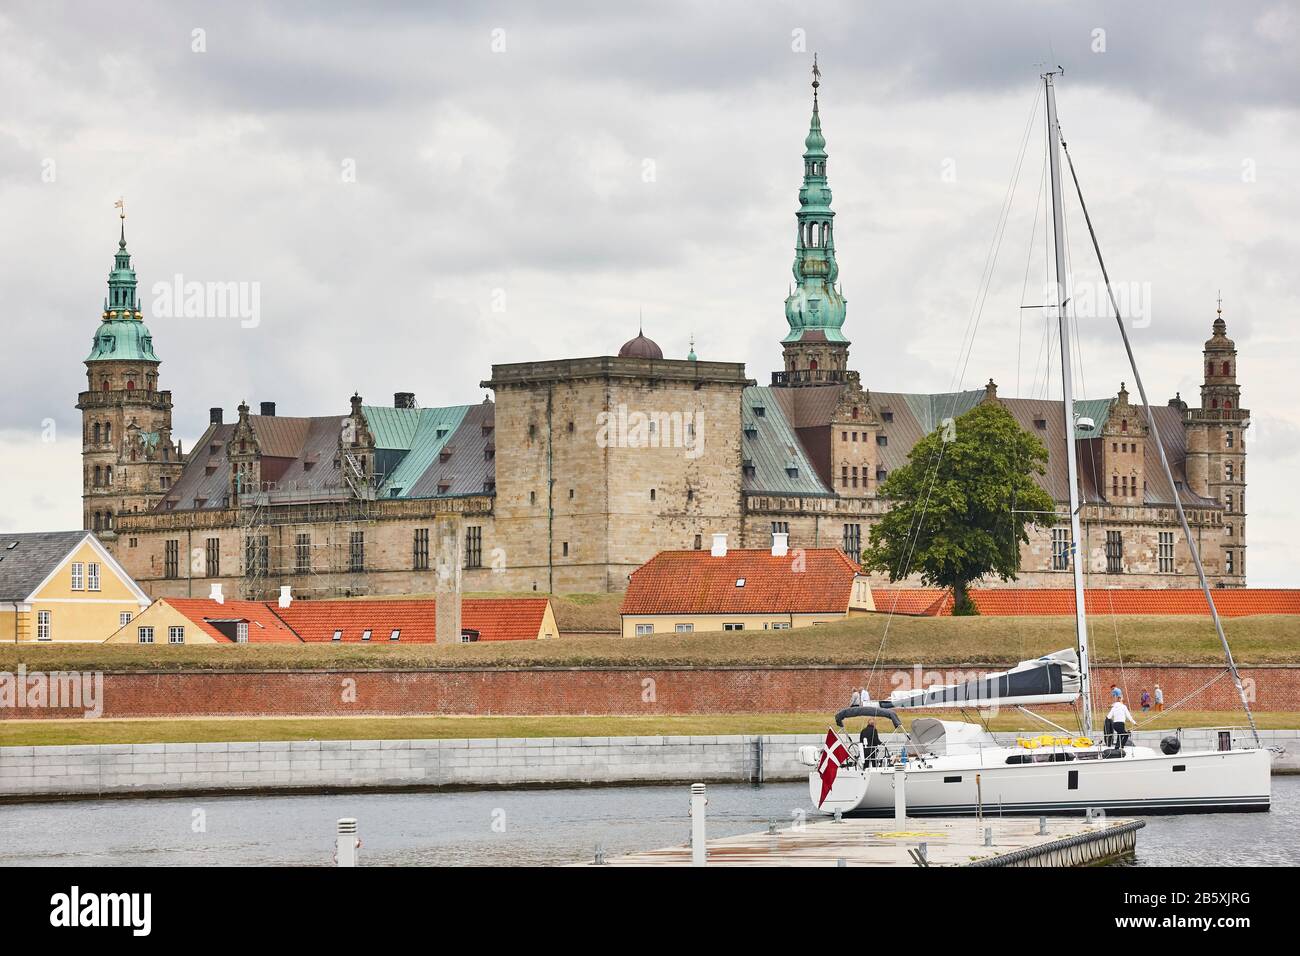 Kronborg Helsingor Elsinor castle fortification and sailboat. Denmark Stock Photo